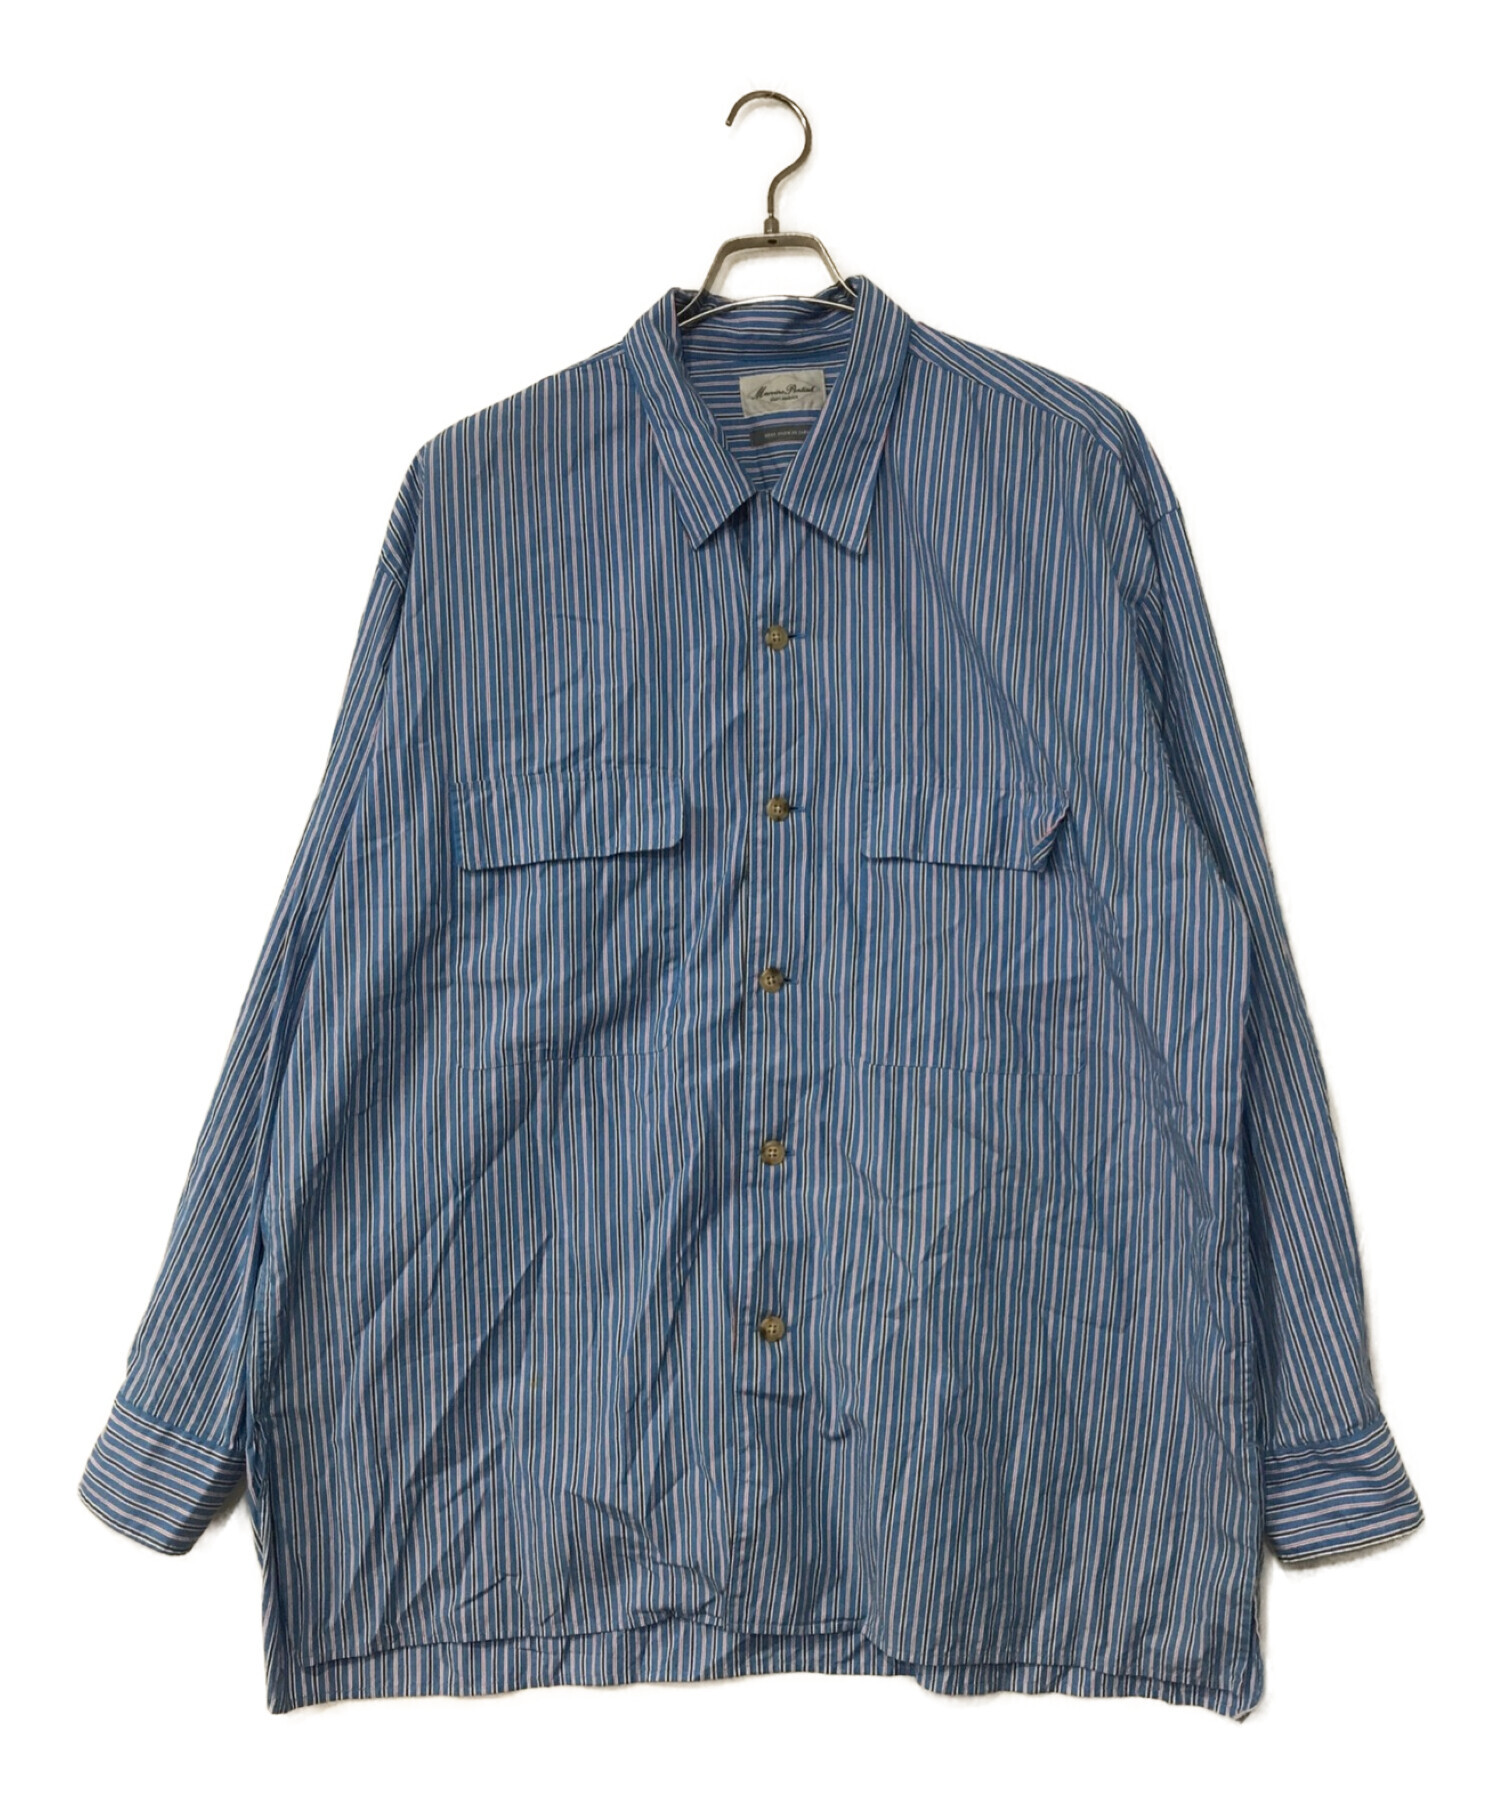 Marvine Pontiak Shirt Makers (マーヴィンポンティアックシャツメイカーズ) Open Collar SH ブルー サイズ:1